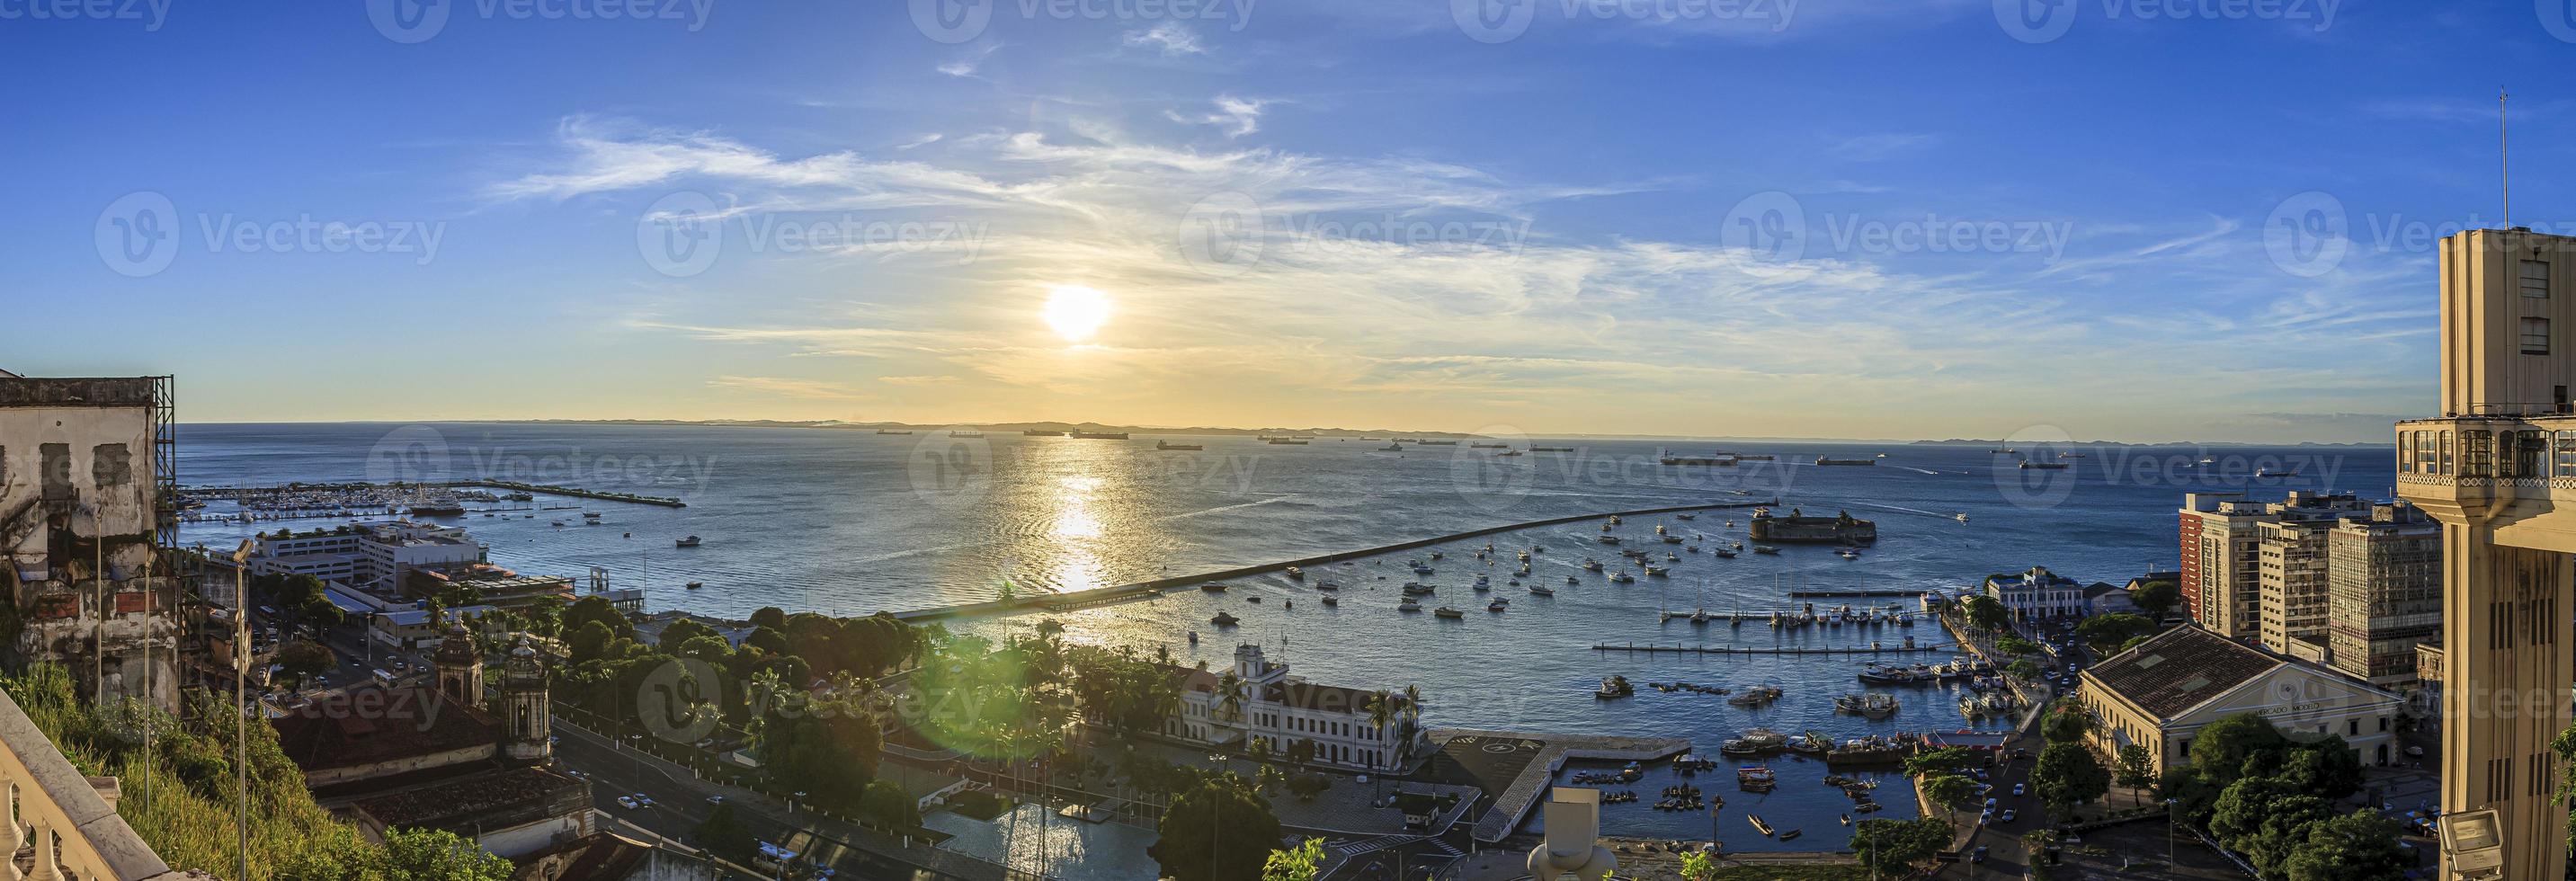 panorama- bild av de hamn av de brasiliansk stad av salvador de bahia foto